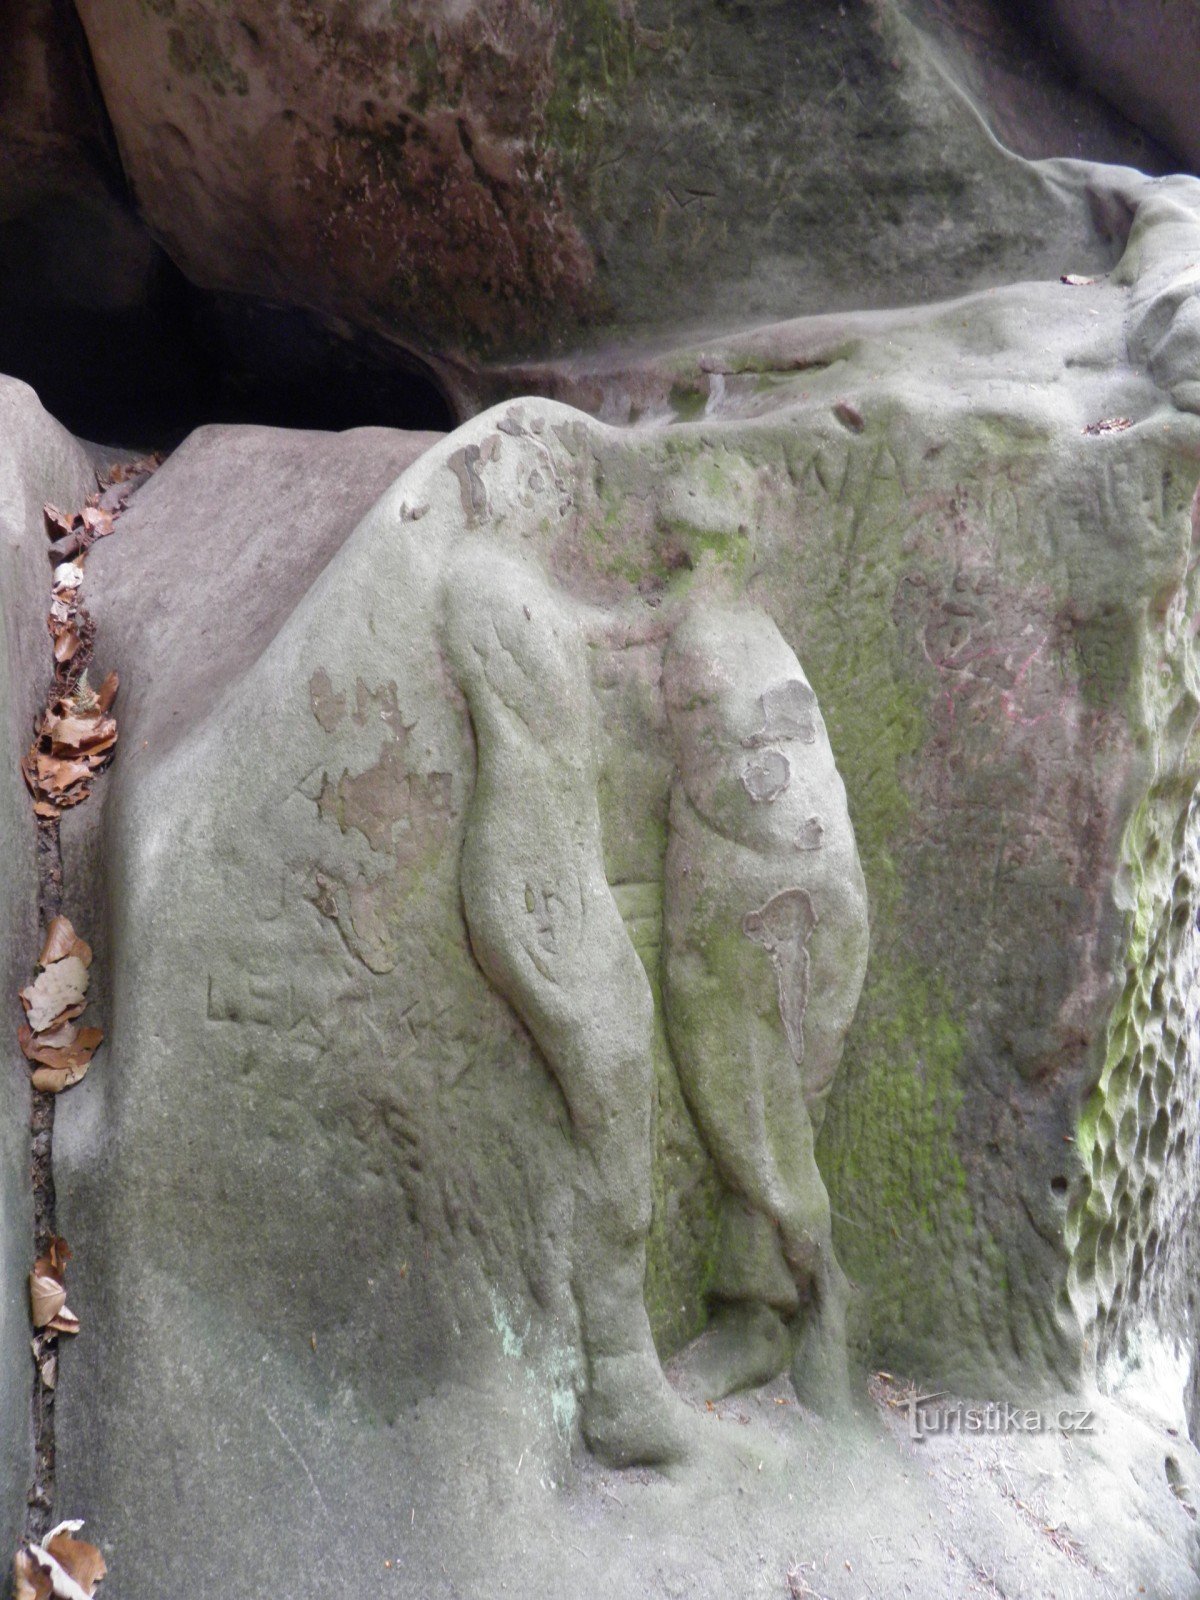 Łóżko Adama - płaskorzeźba skalna w Czeskim Raju.